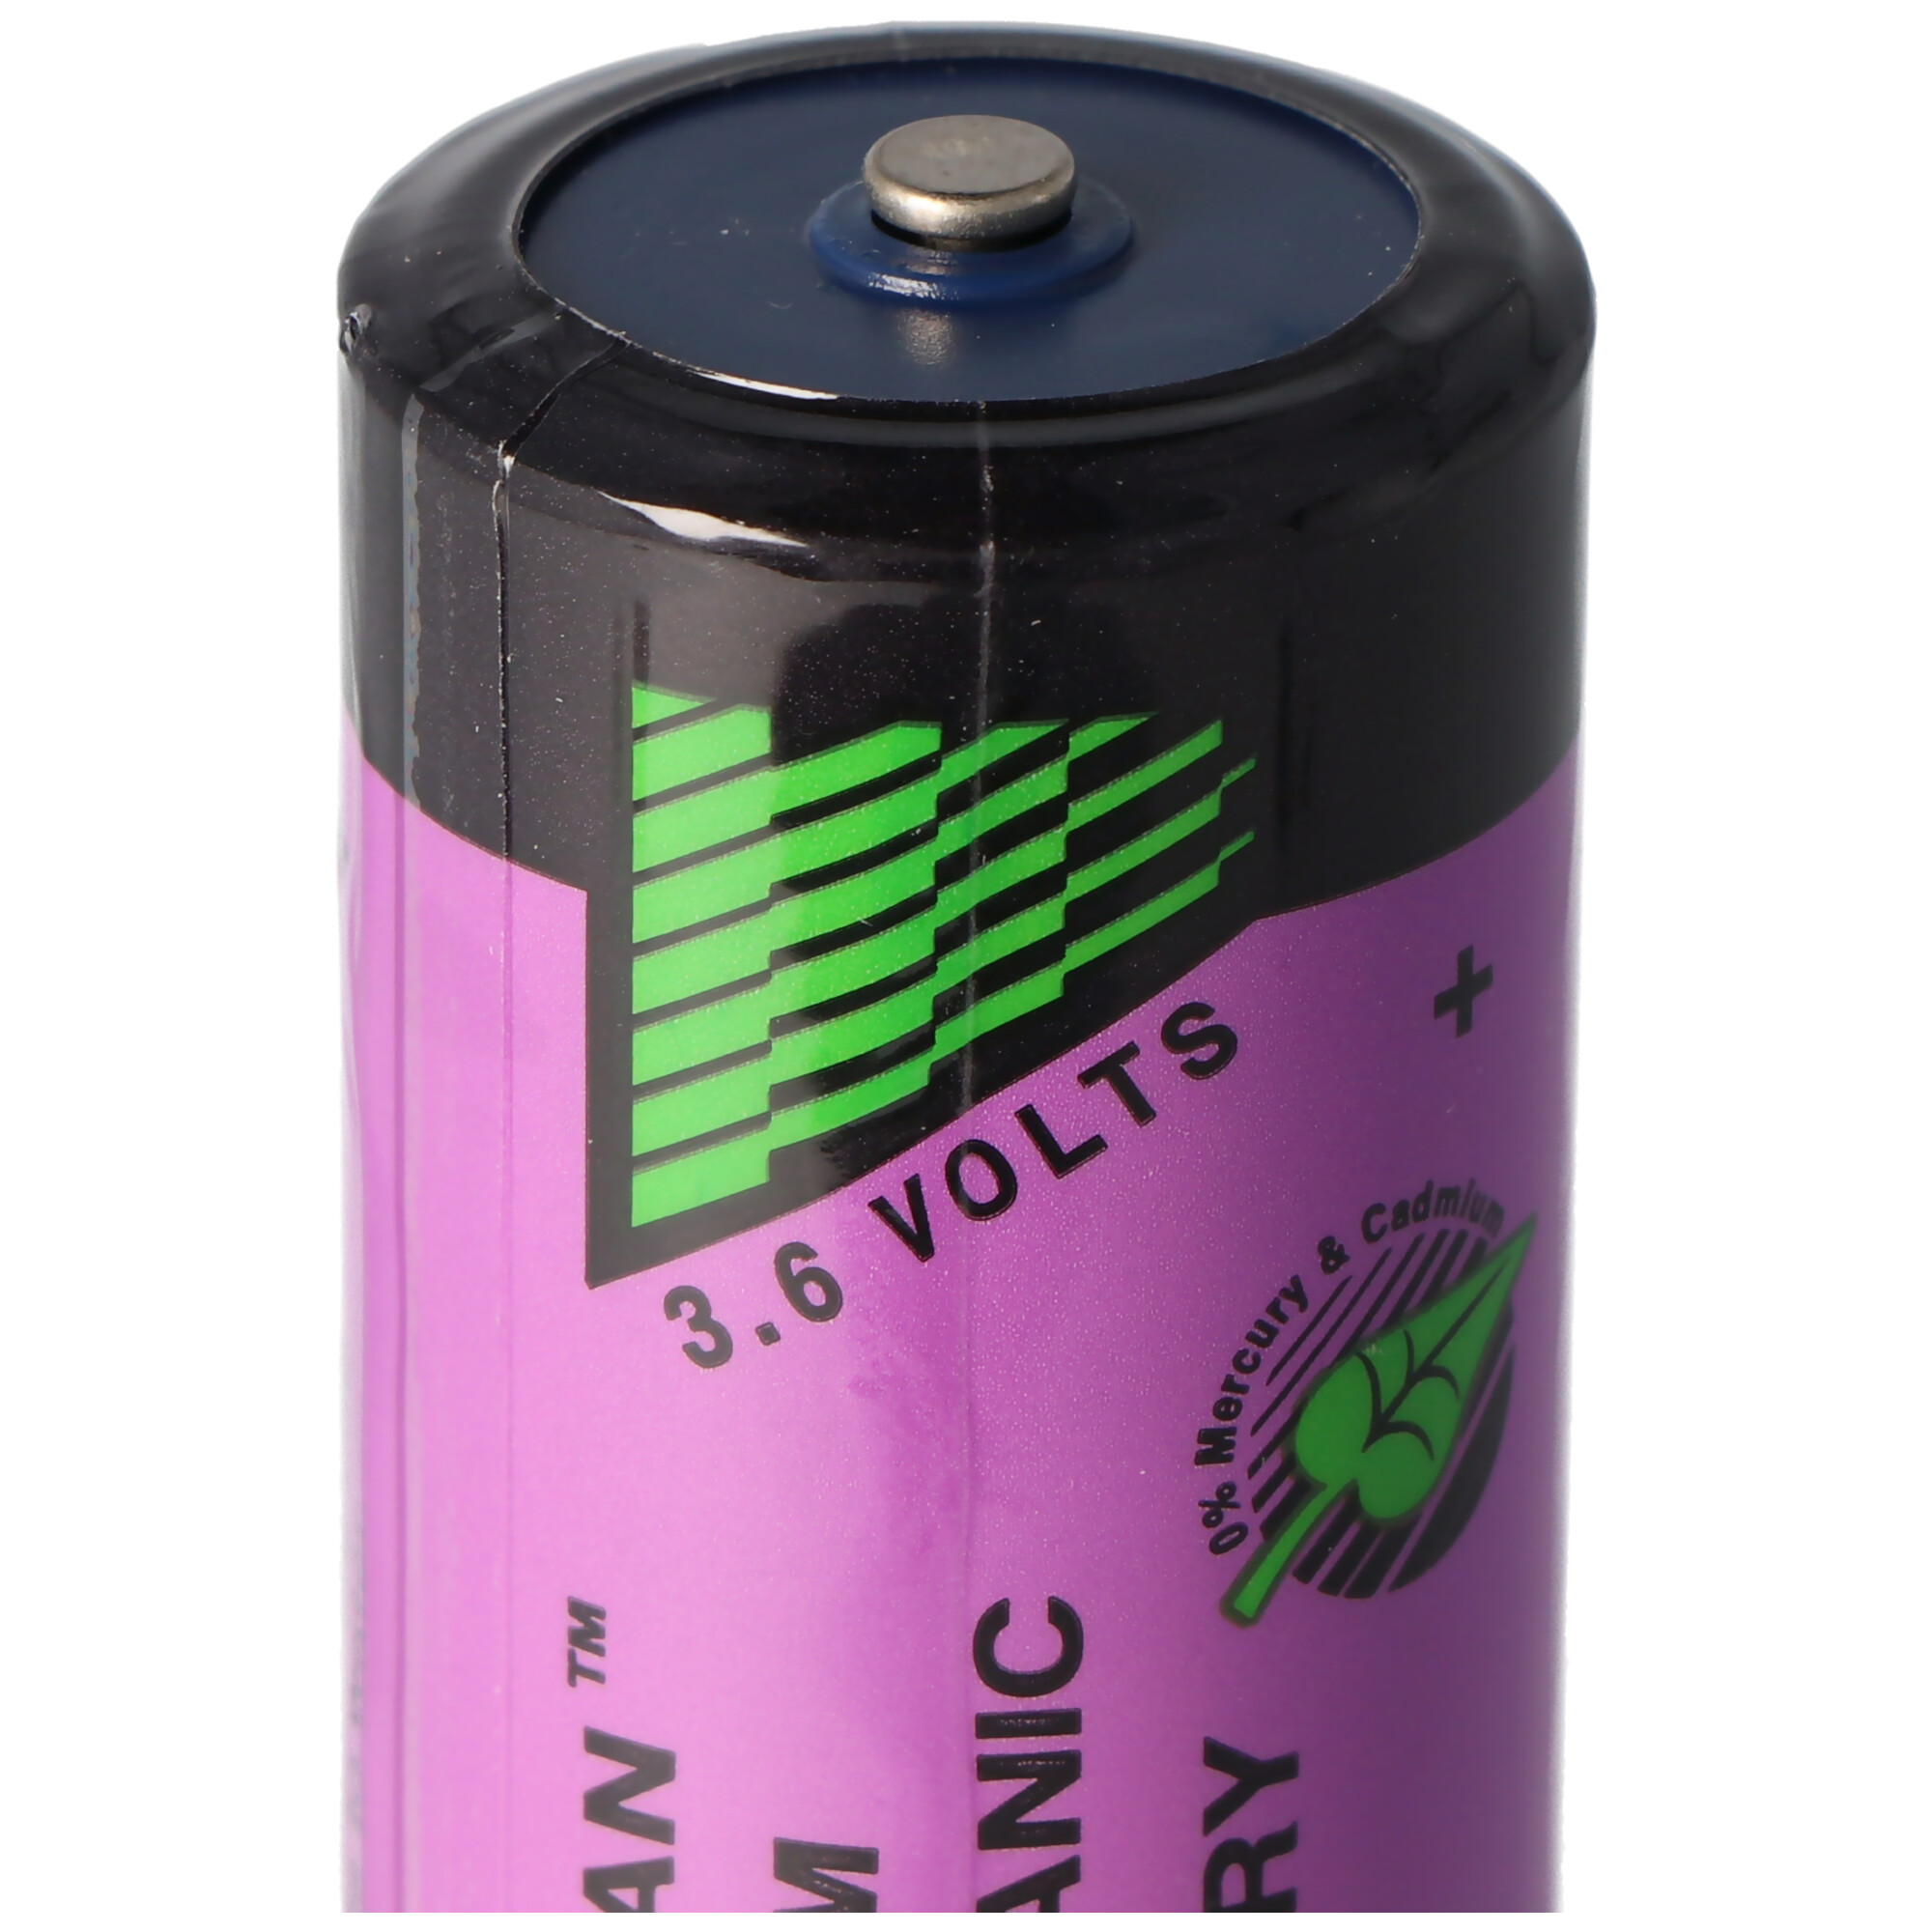 SL-2770 Sonnenschein Inorganic Lithium Battery SL-770, SL-770/S Standard SL770